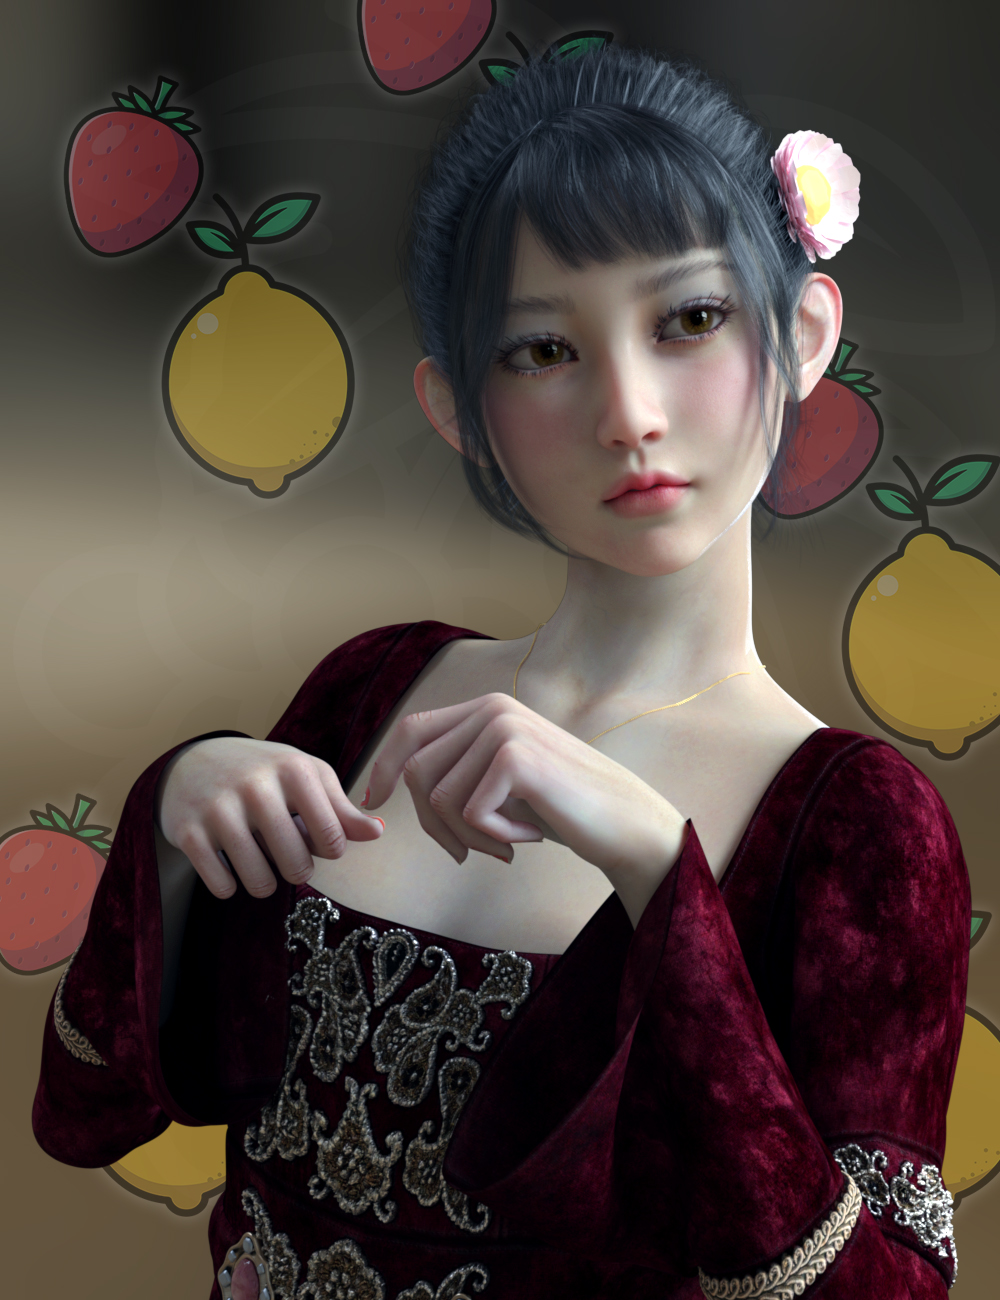 Vo Hataru for Genesis 8.1 Female by: VOOTW, 3D Models by Daz 3D